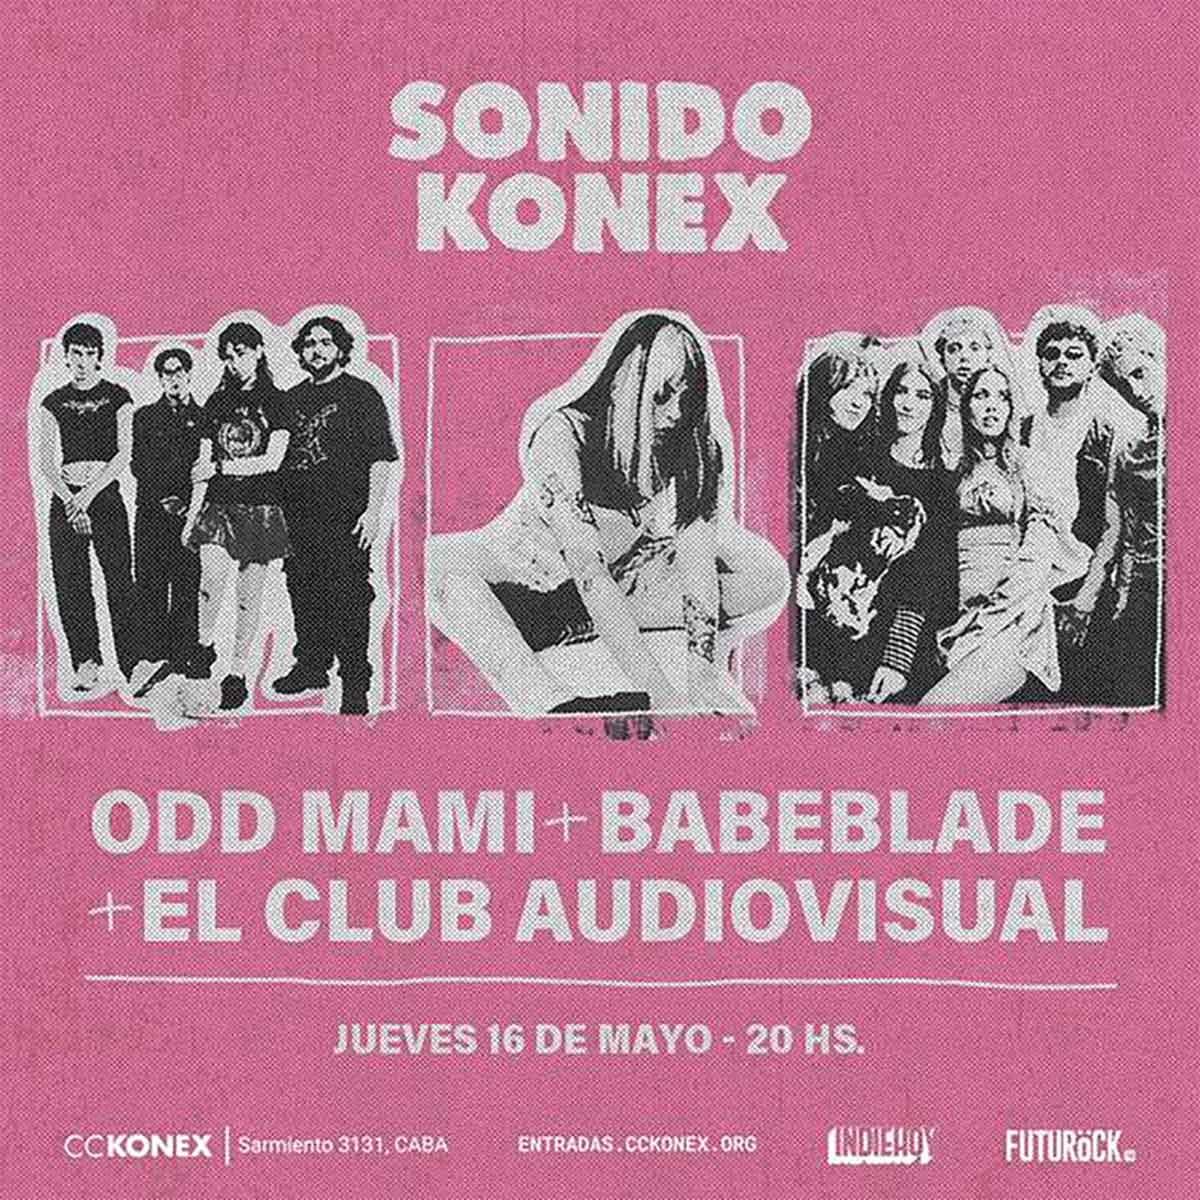 El Club Audiovisual, Odd Mami y Babeblade en Konex